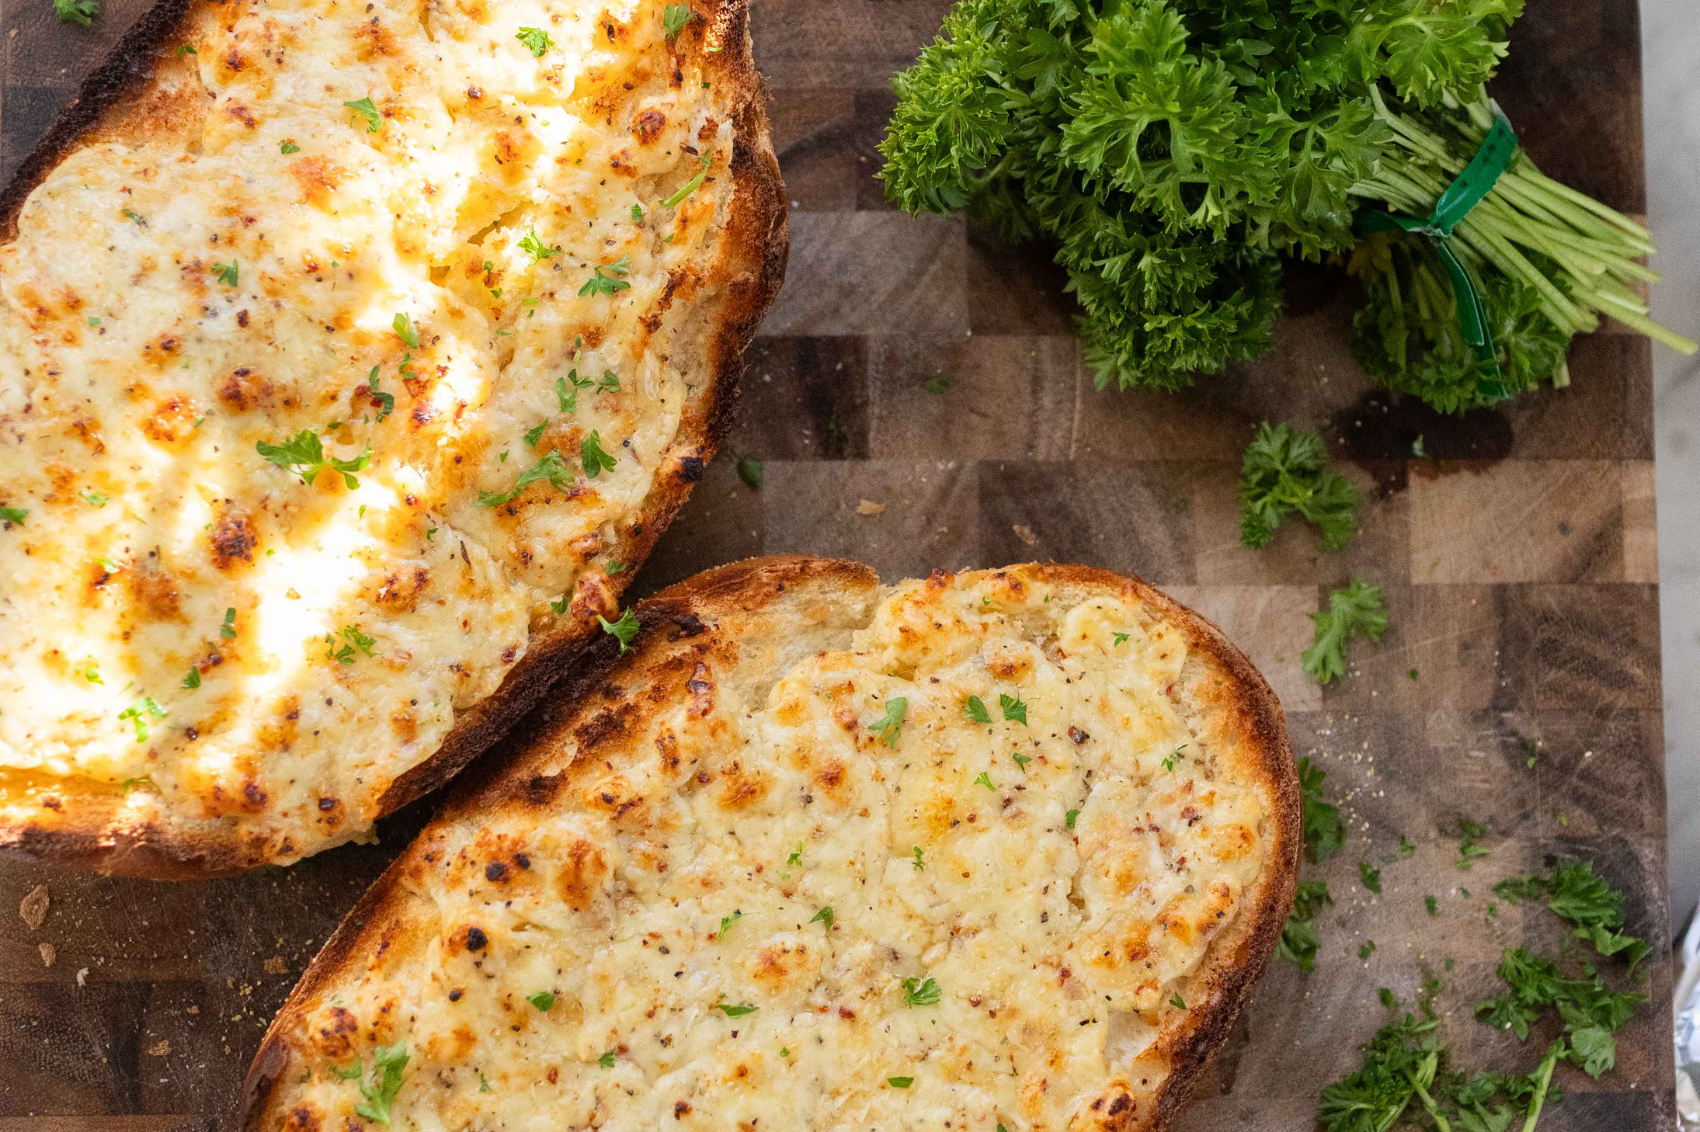 Cheesy garlic bread with GA Gouda